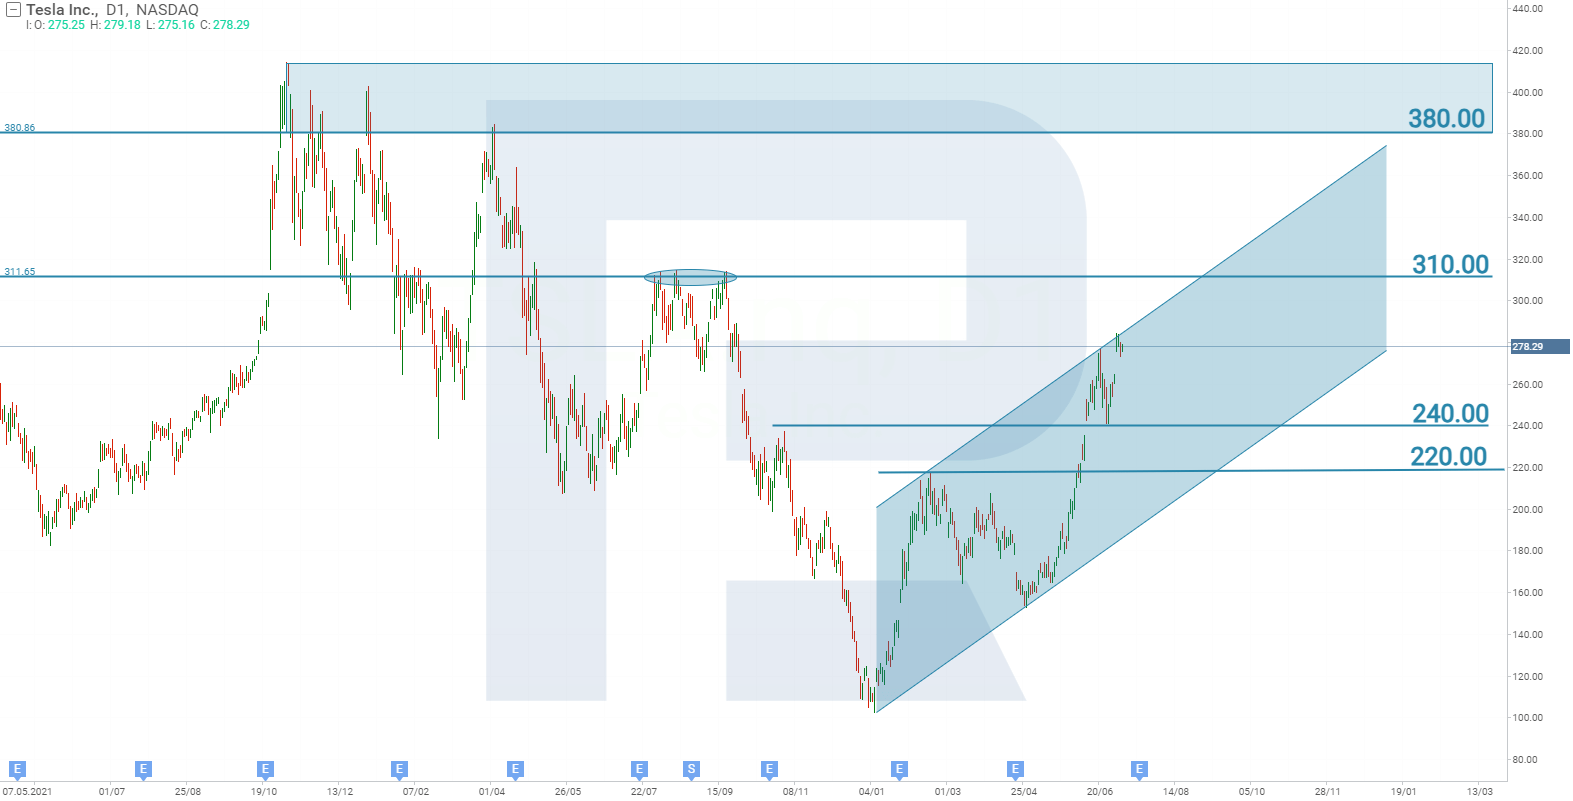 Tesla Inc. stock chart